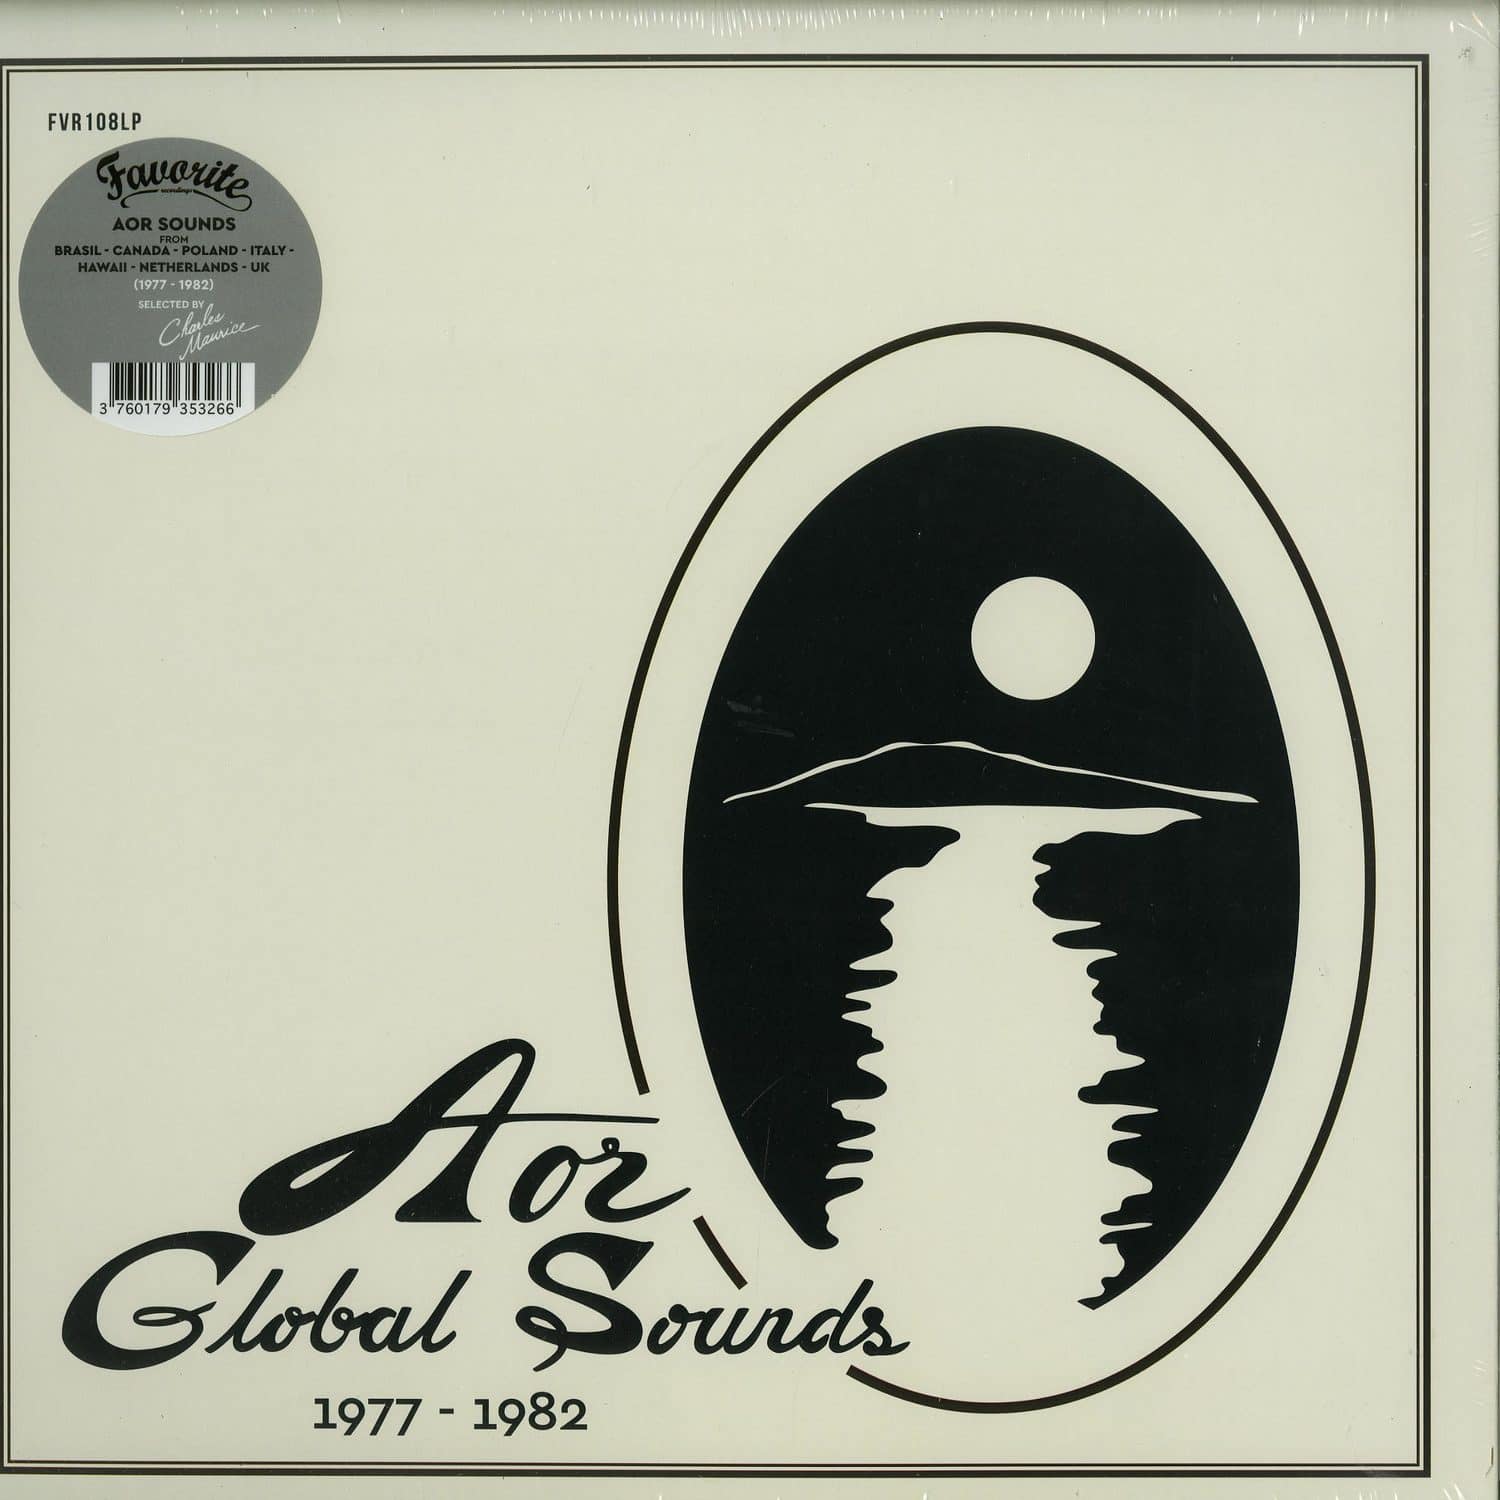 Various Artists - AOR GLOBAL SOUNDS 